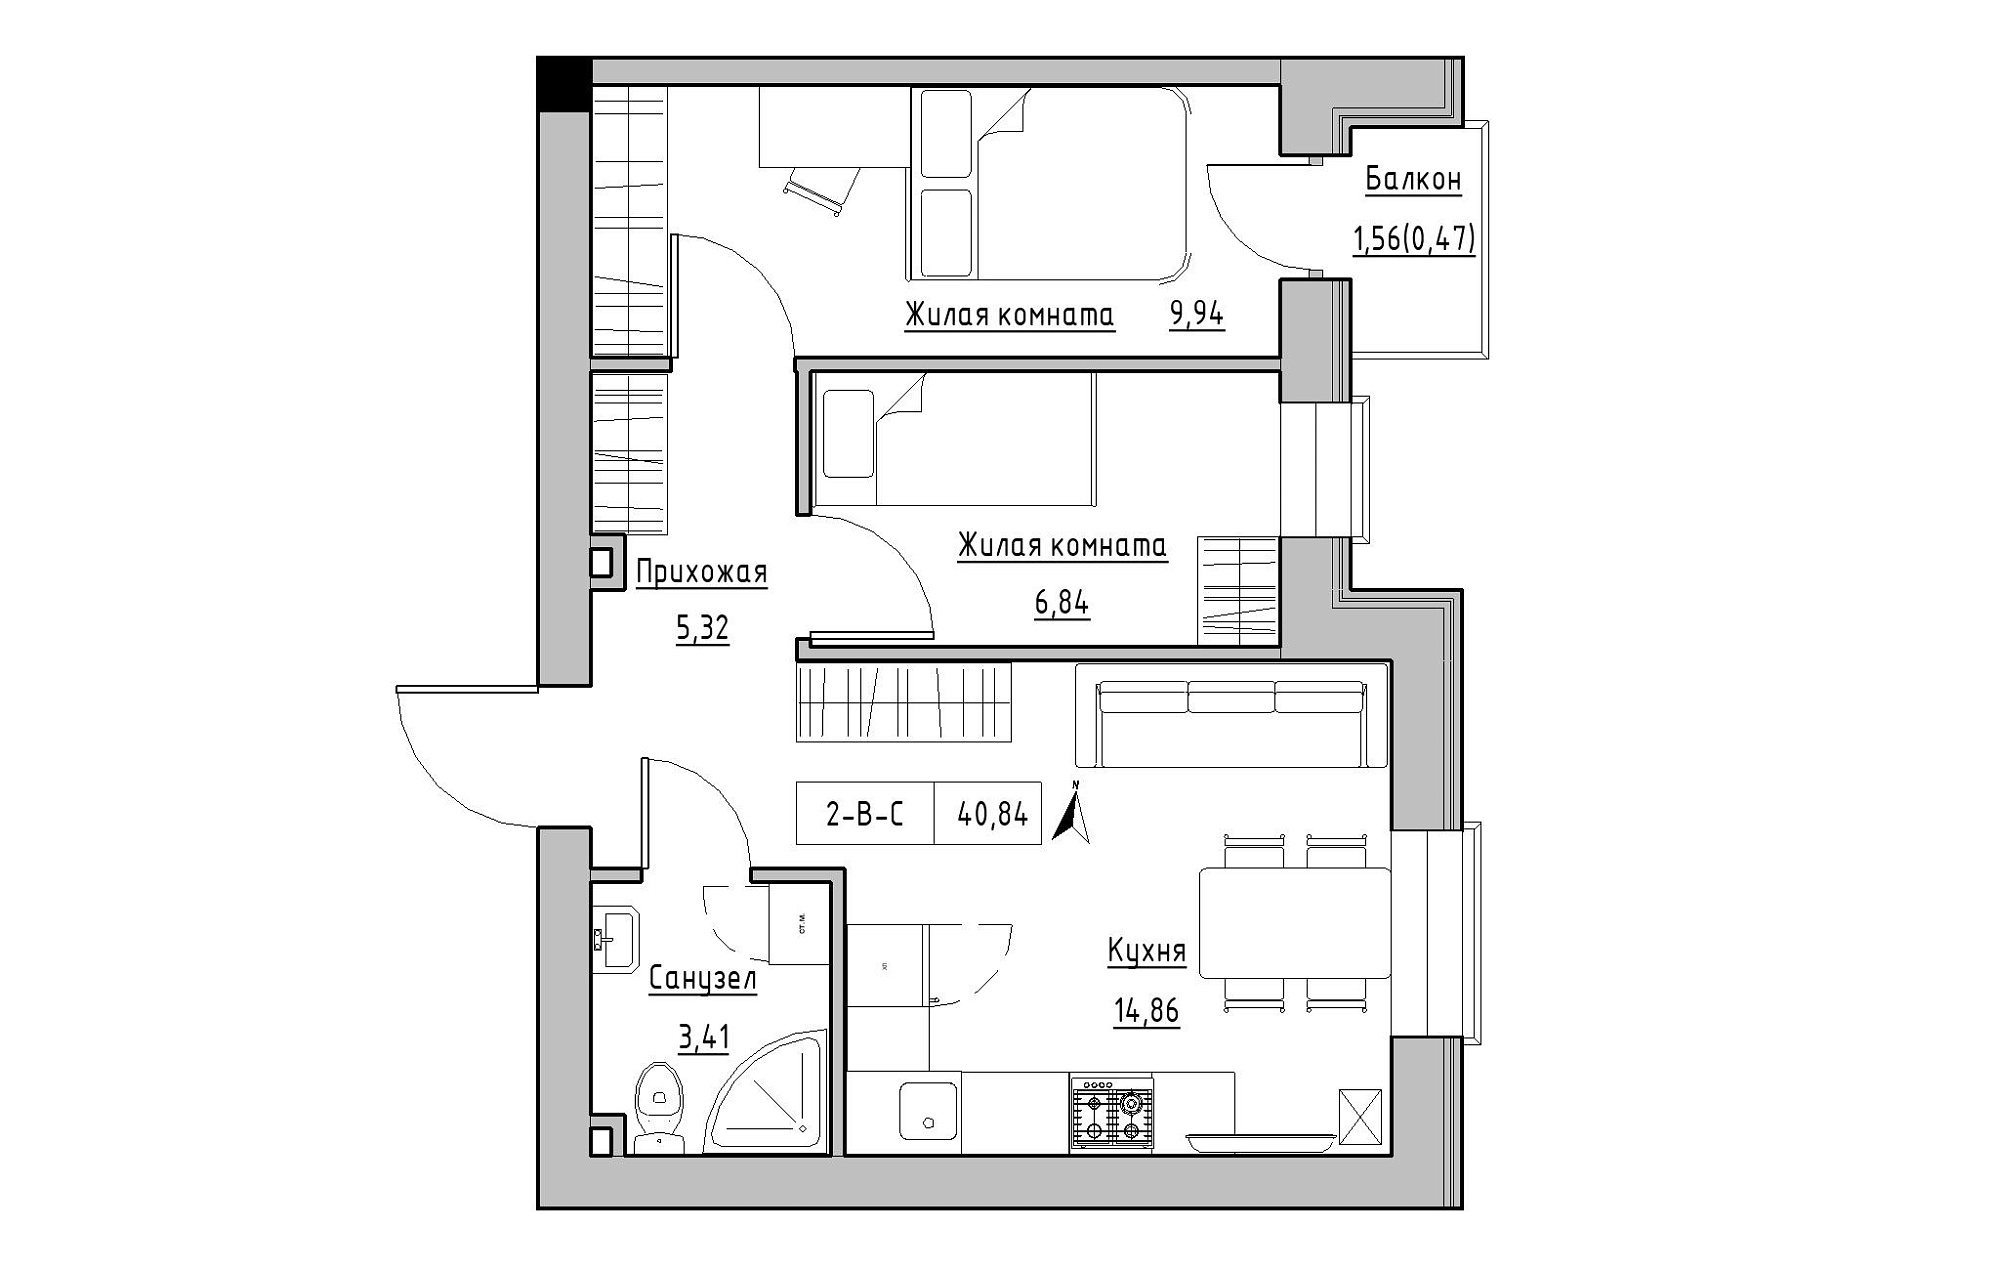 Планировка 2-к квартира площей 40.84м2, KS-019-02/0006.